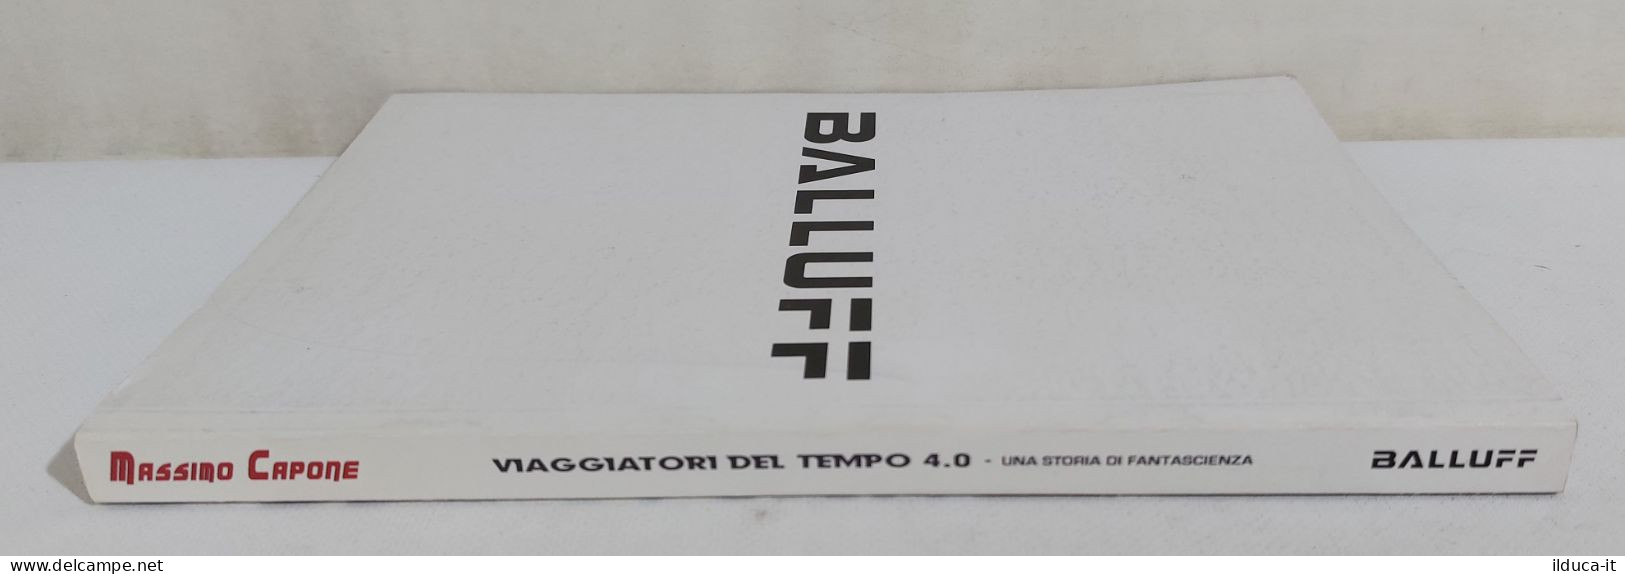 I111603 Massimo Capone - Viaggiatori Del Tempo 4.0 - Balluff 2016 - First Editions